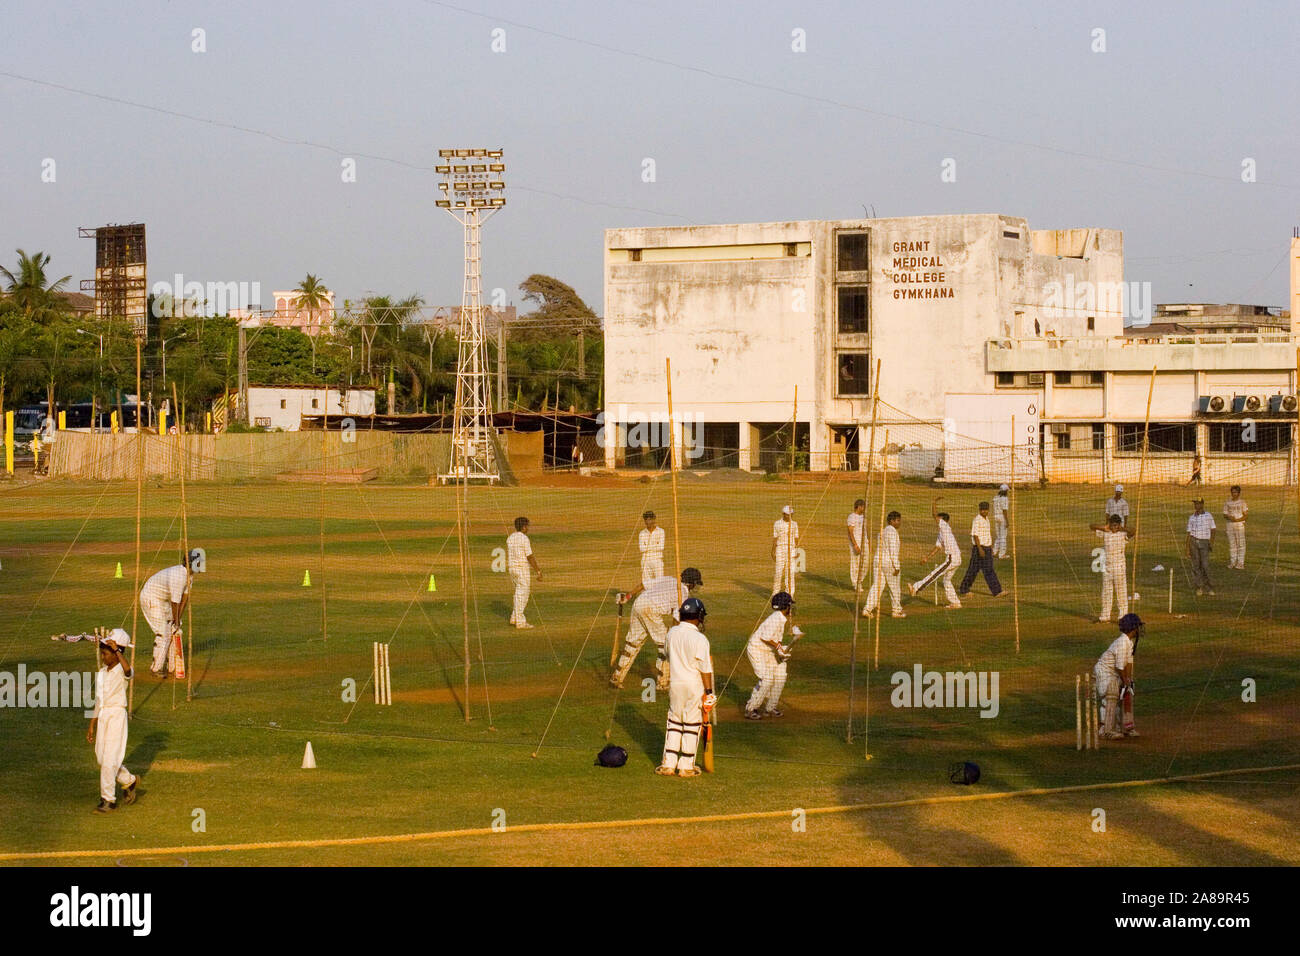 Cricket Mumbai india Stock Photo